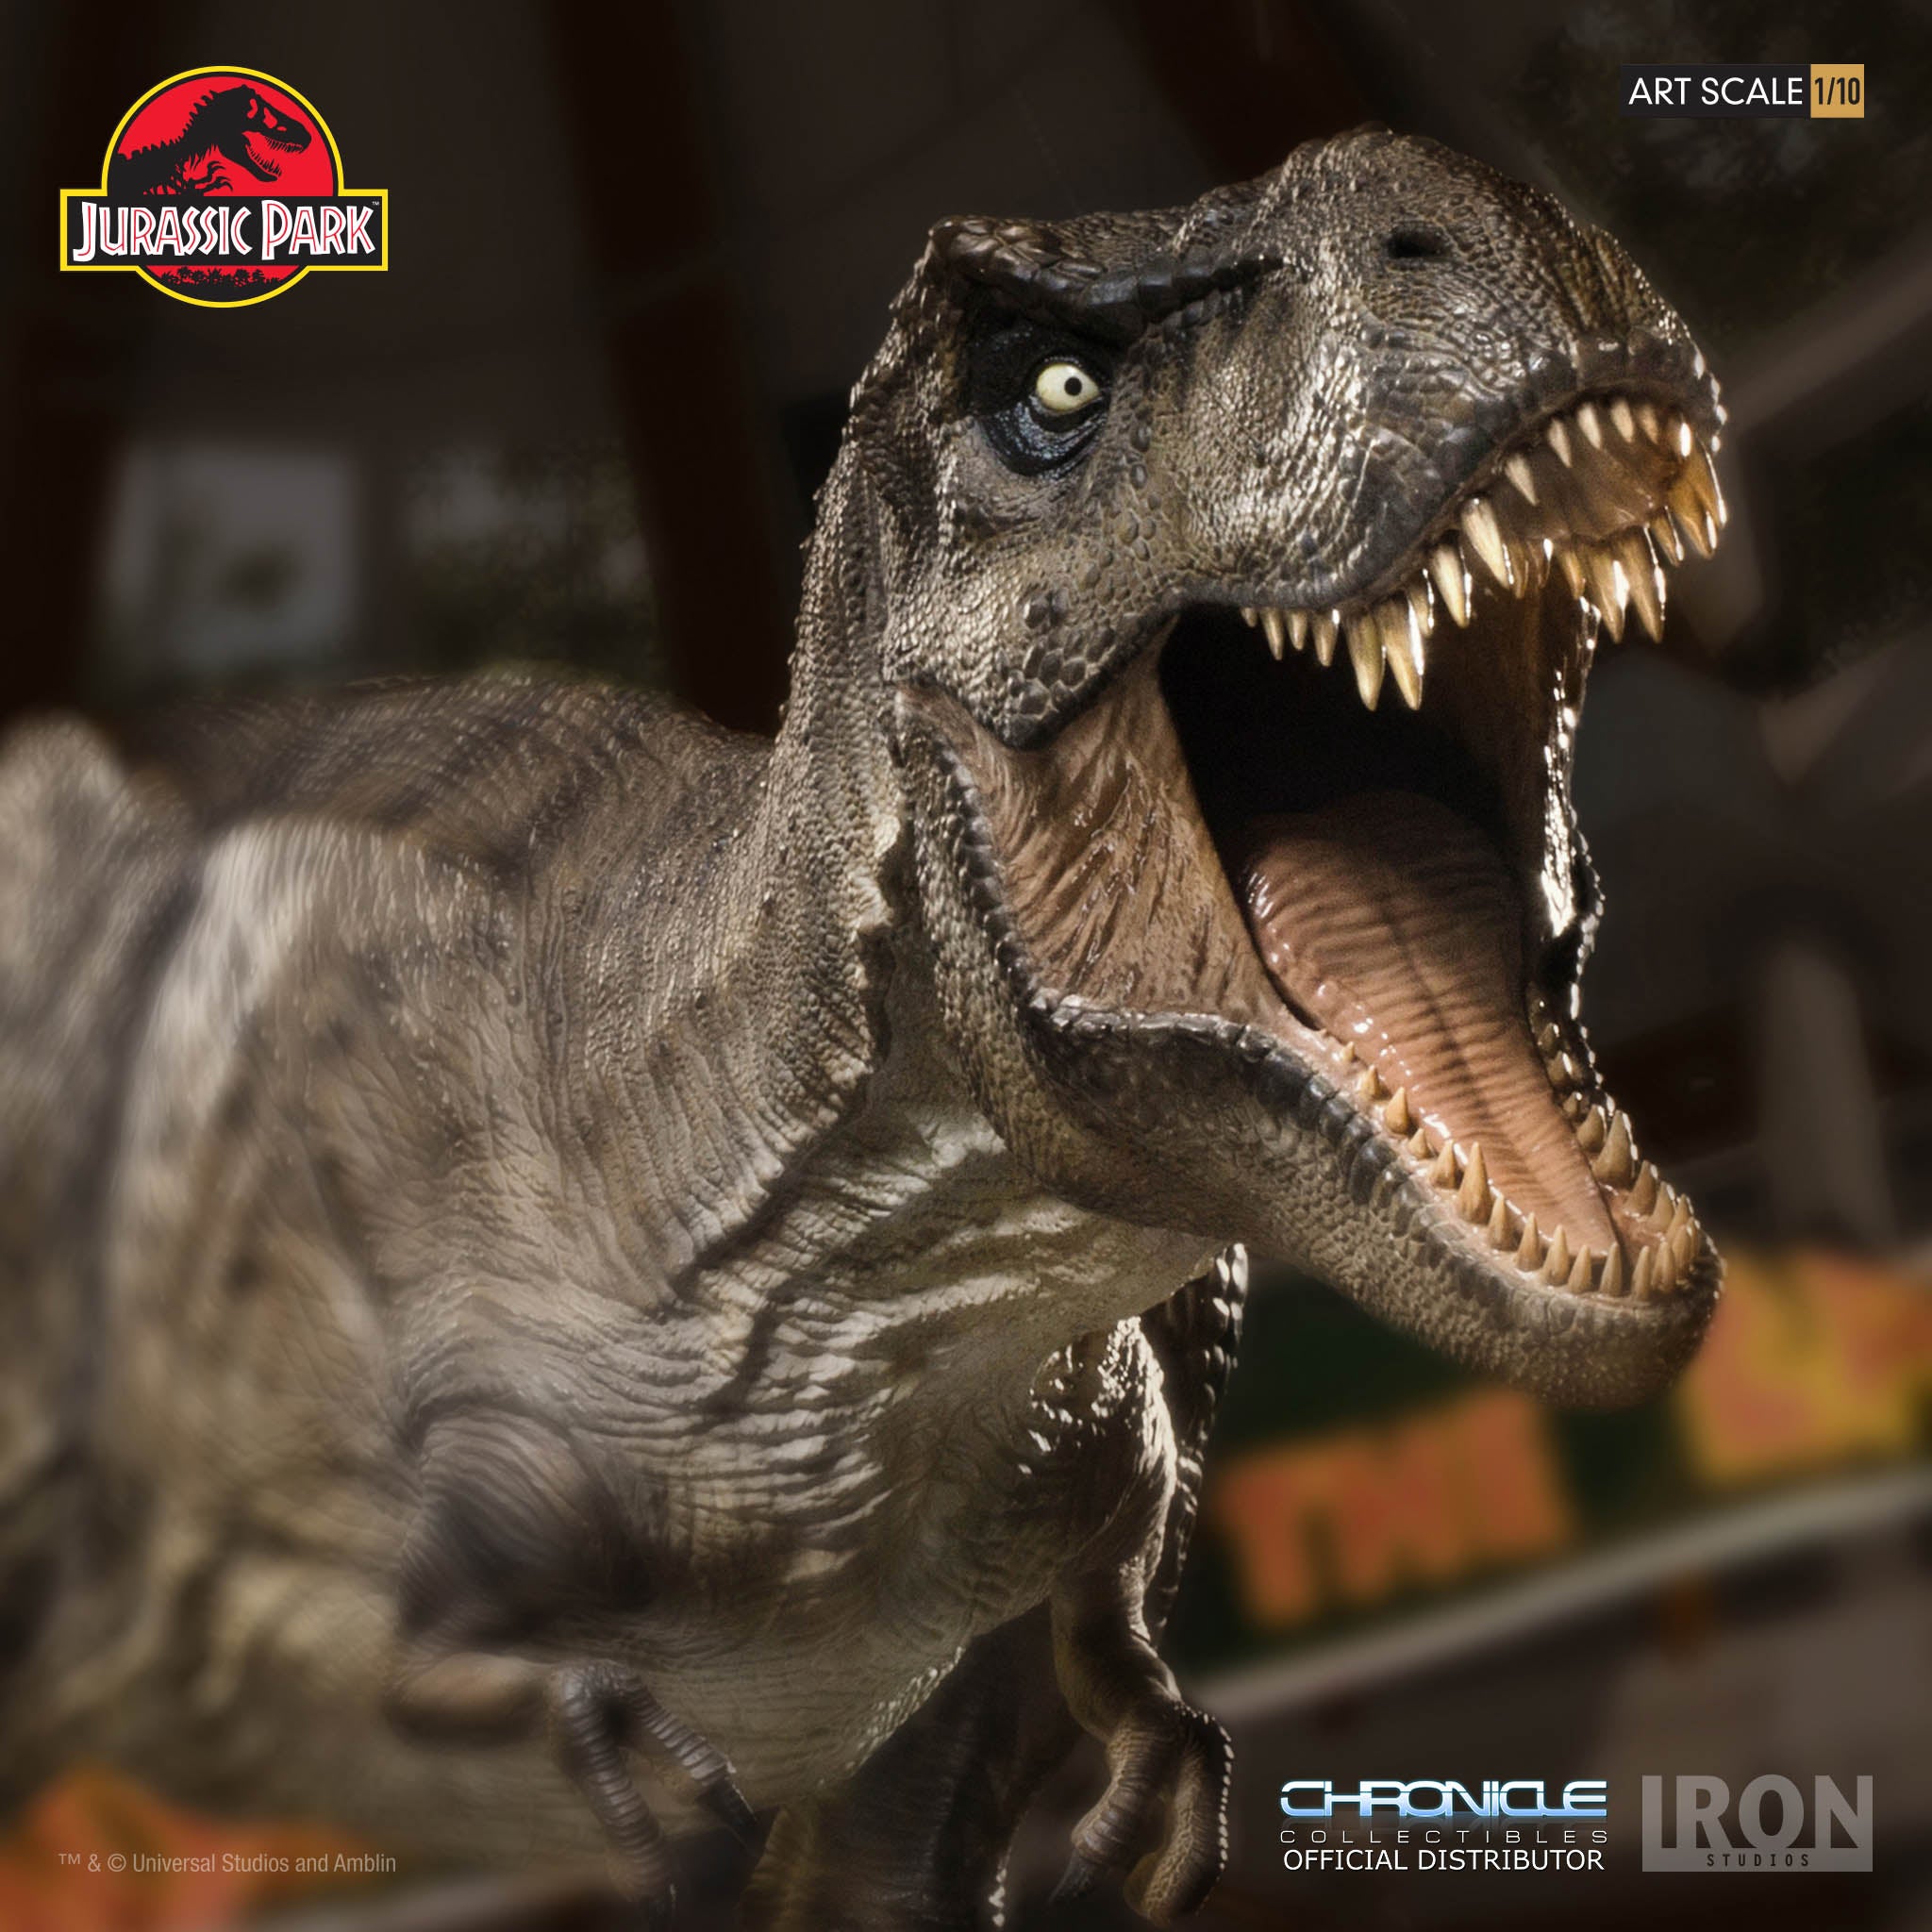 Iron Studios - 1:10 Art Scale Statue - Jurassic Park - Tyrannosaurus Rex - Marvelous Toys